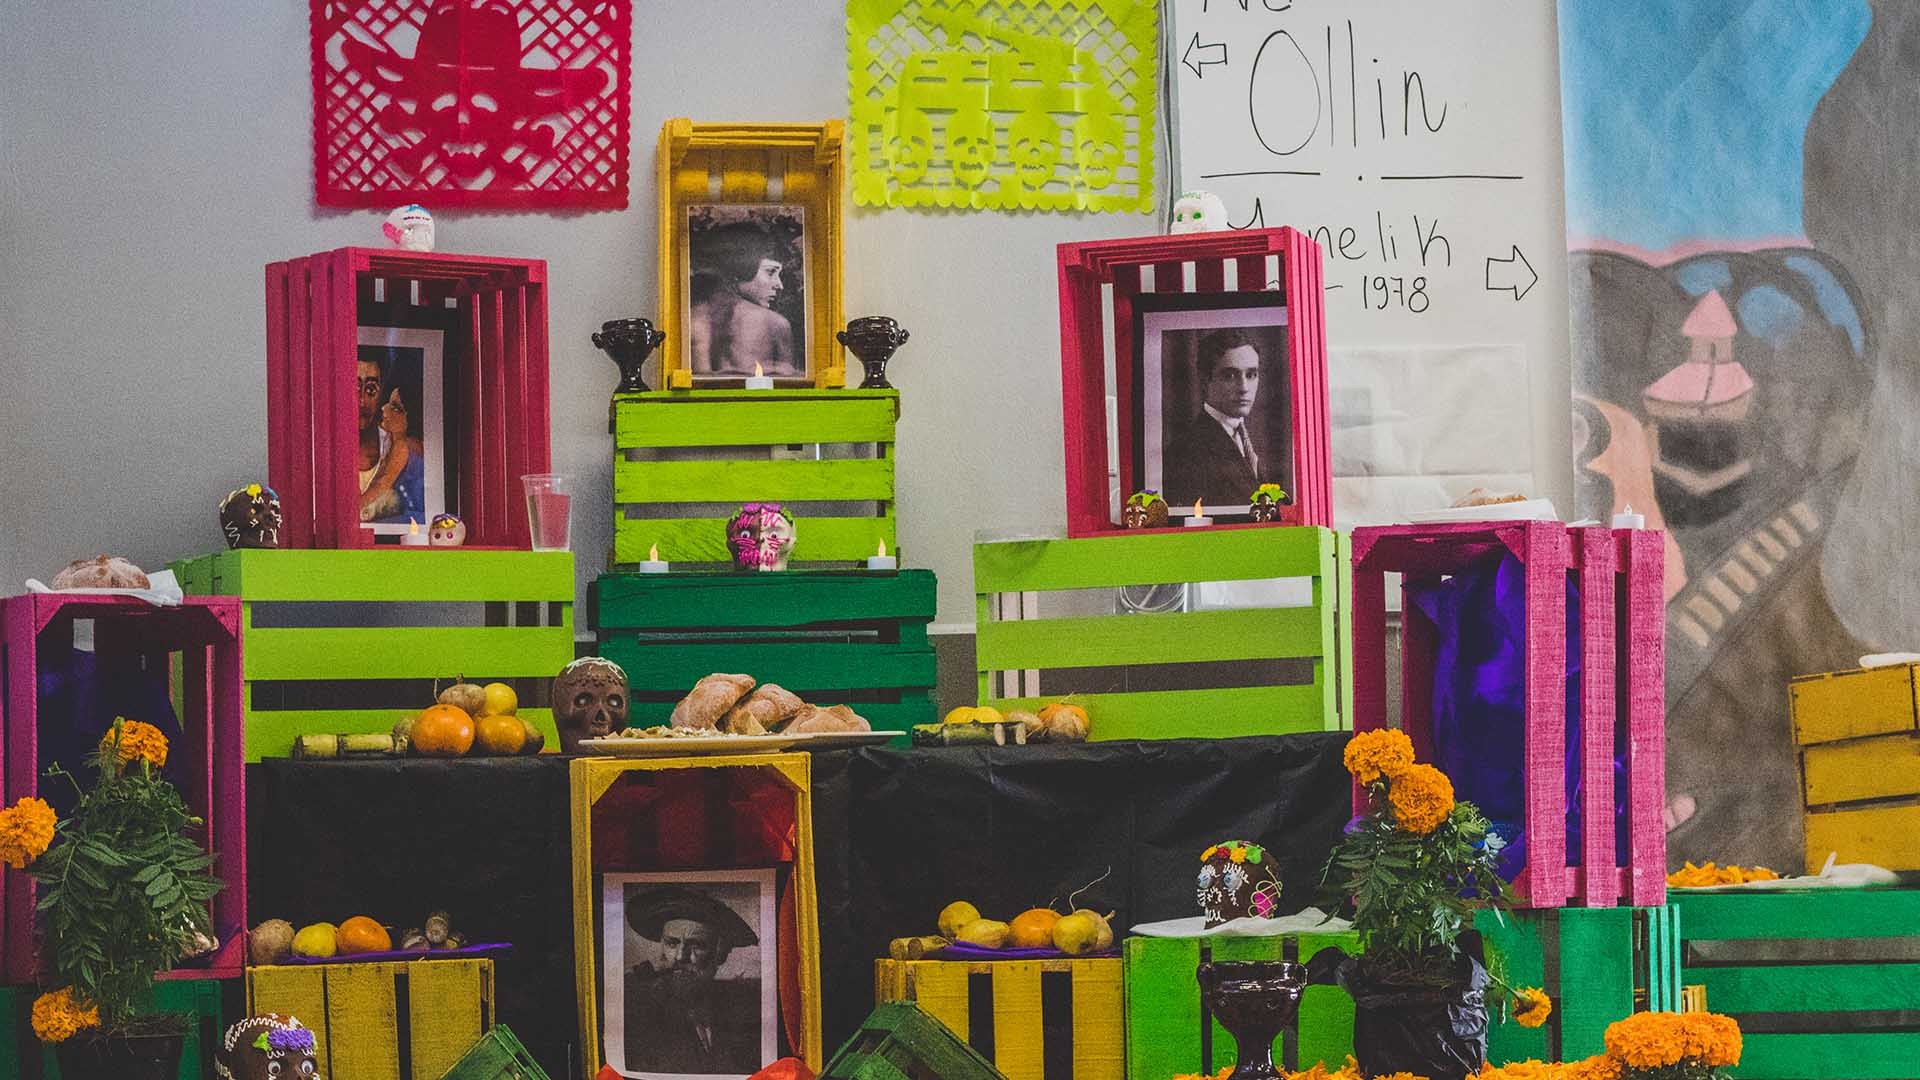 Muertec se lleva a cabo en la preparatoria del Tecnológico de Monterrey campus Toluca para celebrar el Día de Muertos